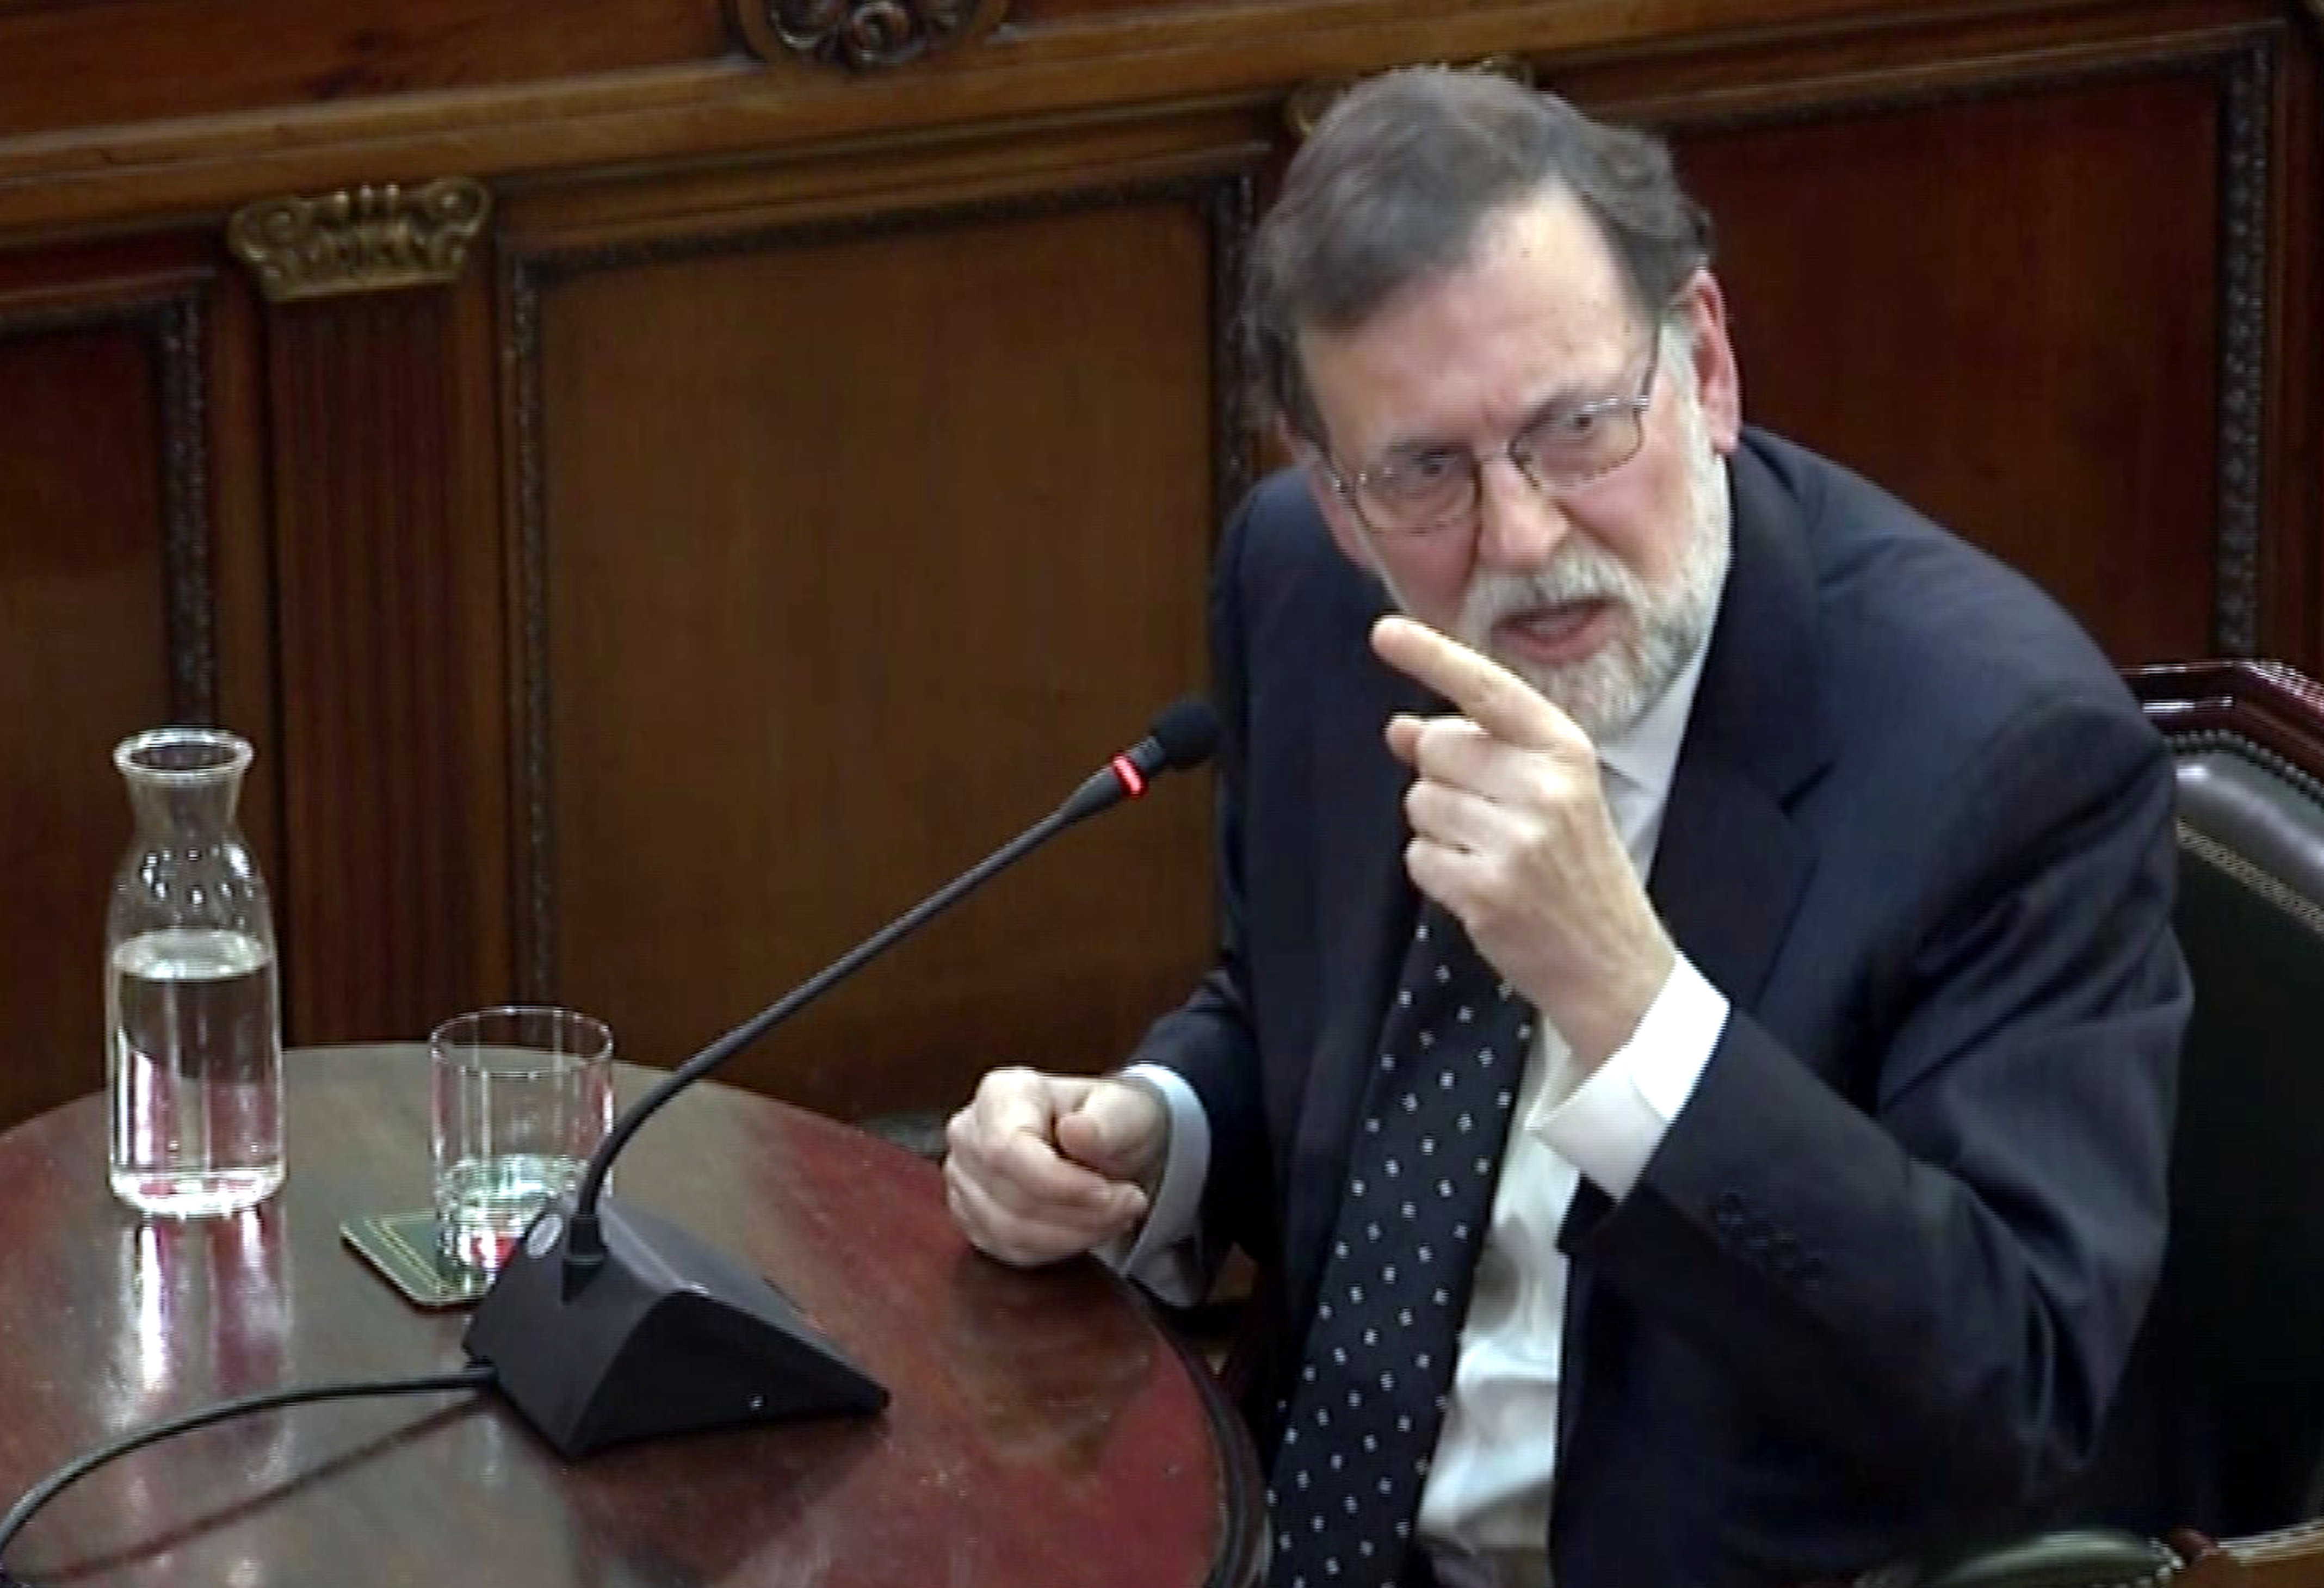 Rajoy: "Mai hi va haver res de què parlar, els vaig deixar clar que no hi hauria un referèndum"